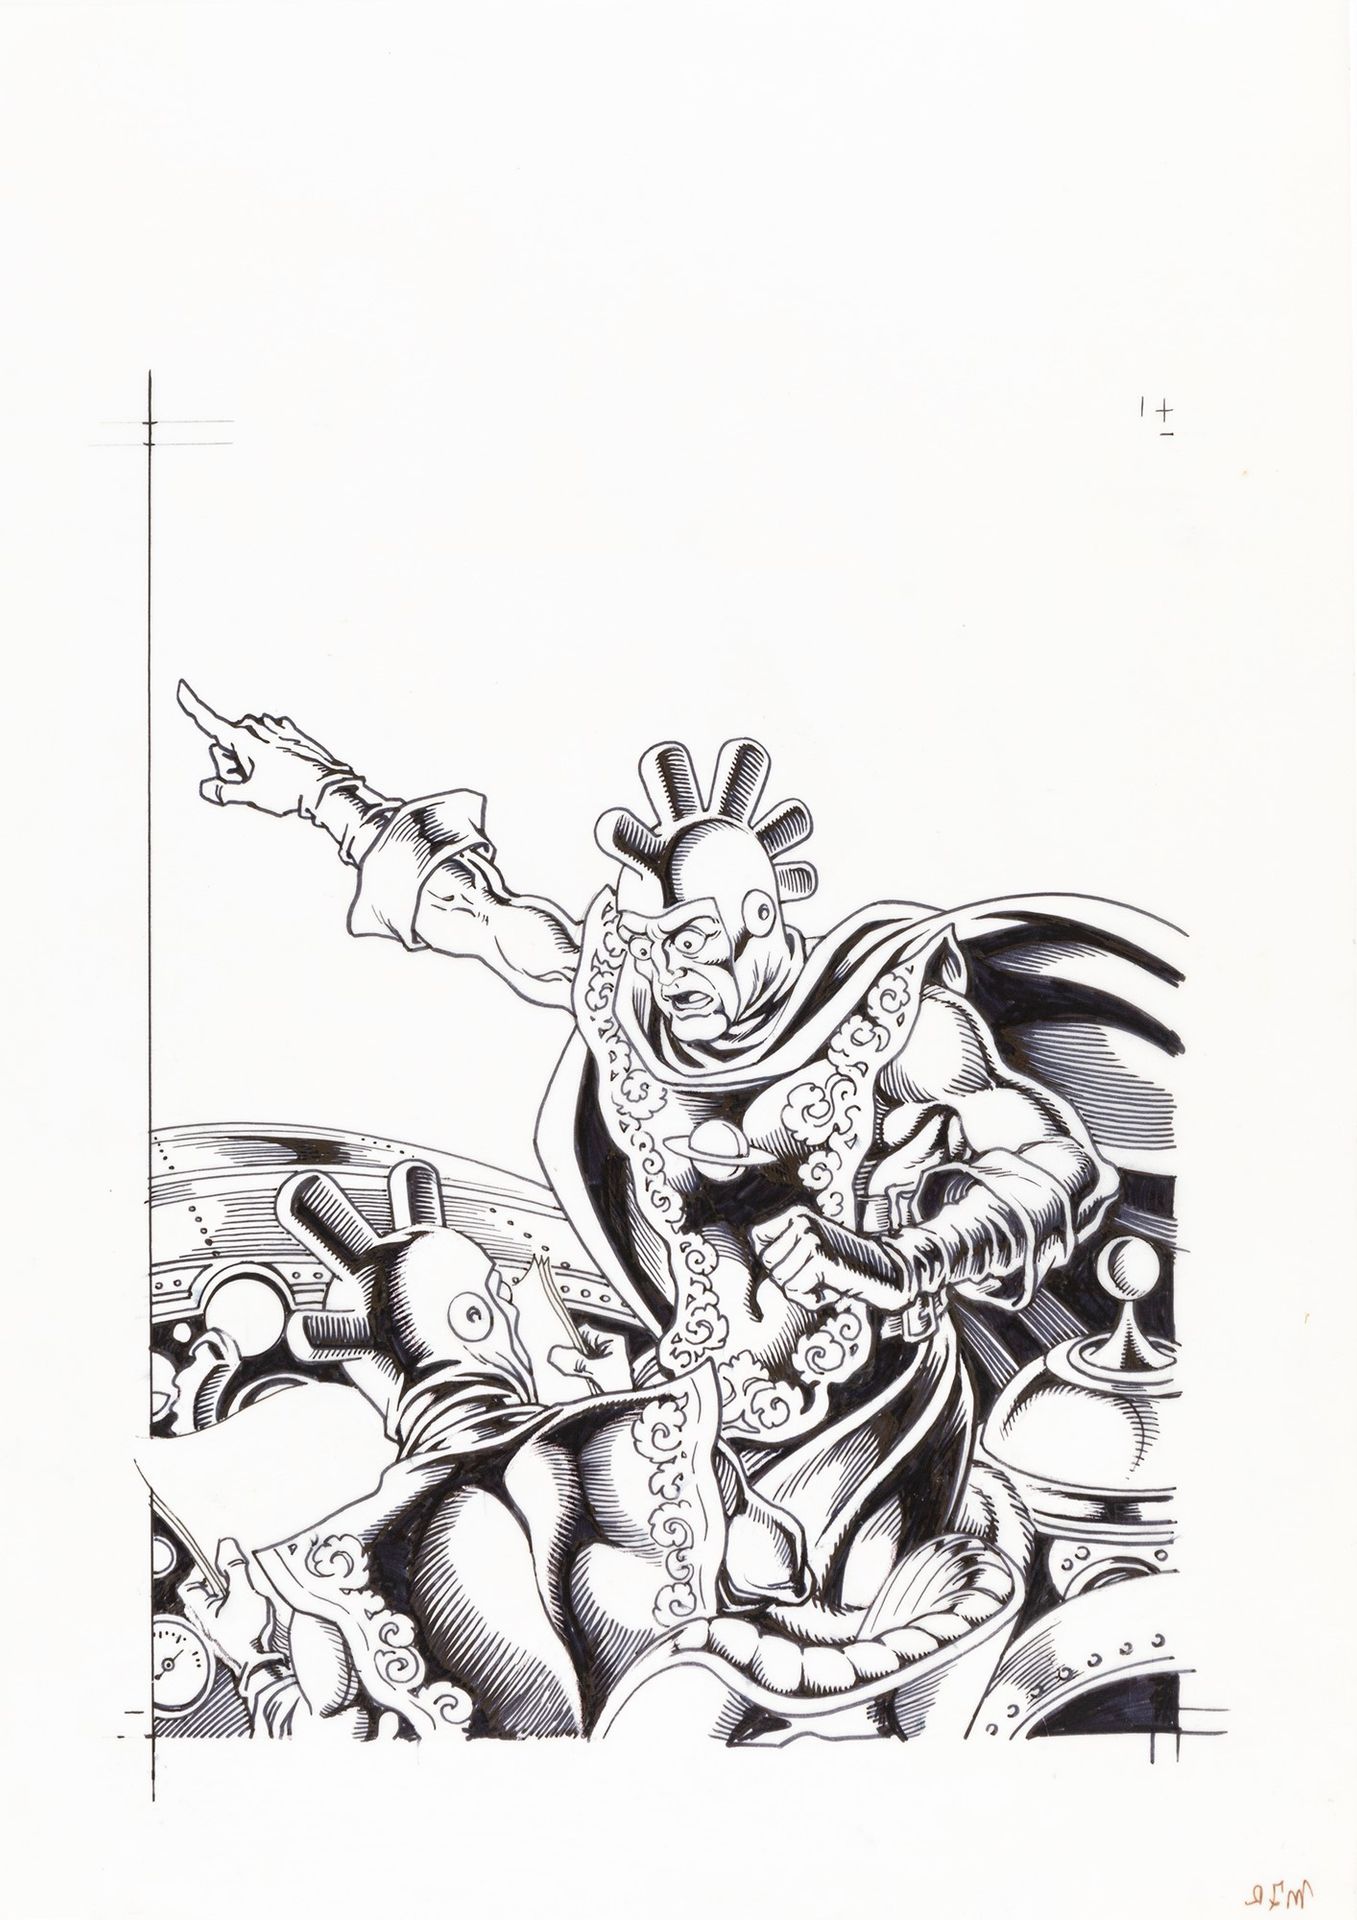 MAGNUS (ROBERTO RAVIOLA) Comic Art n. 77, 1991

encre et feutre sur papier calqu&hellip;